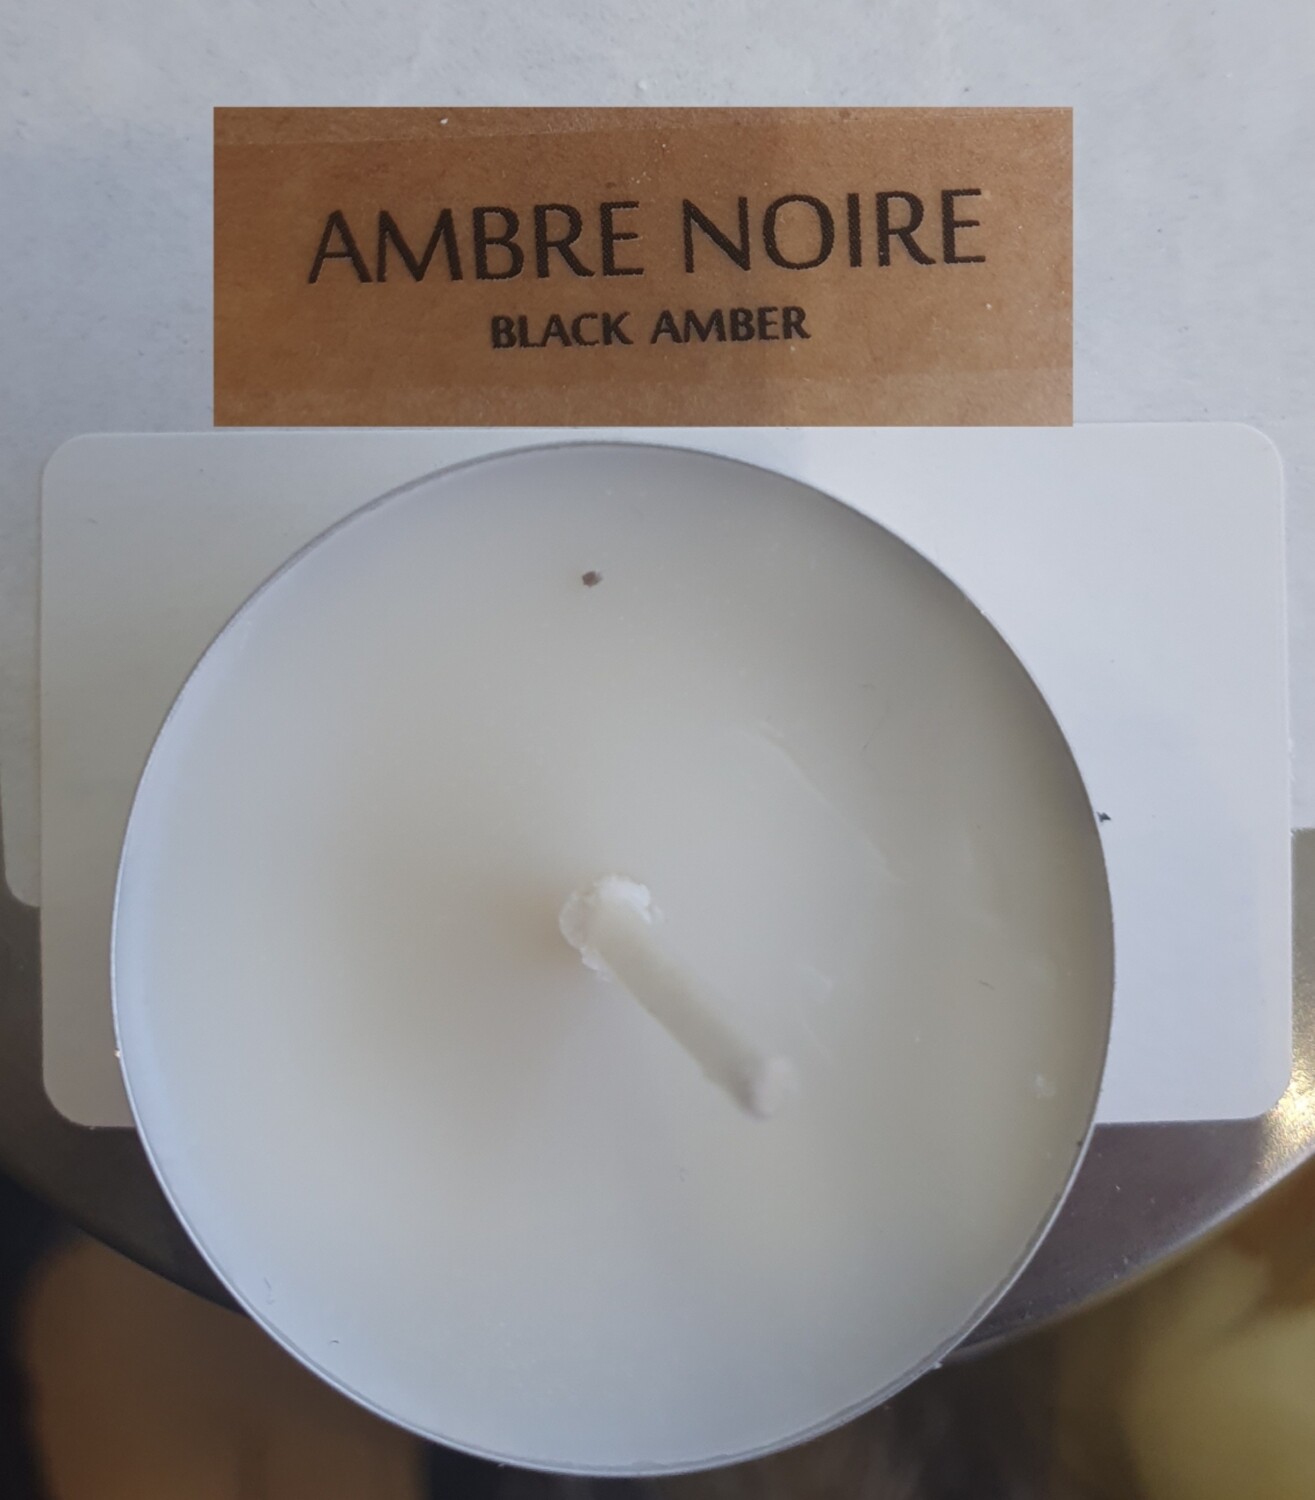 BOUGIE PARFUMEE
CHAUFFE PLAT: AMBRE NOIRE